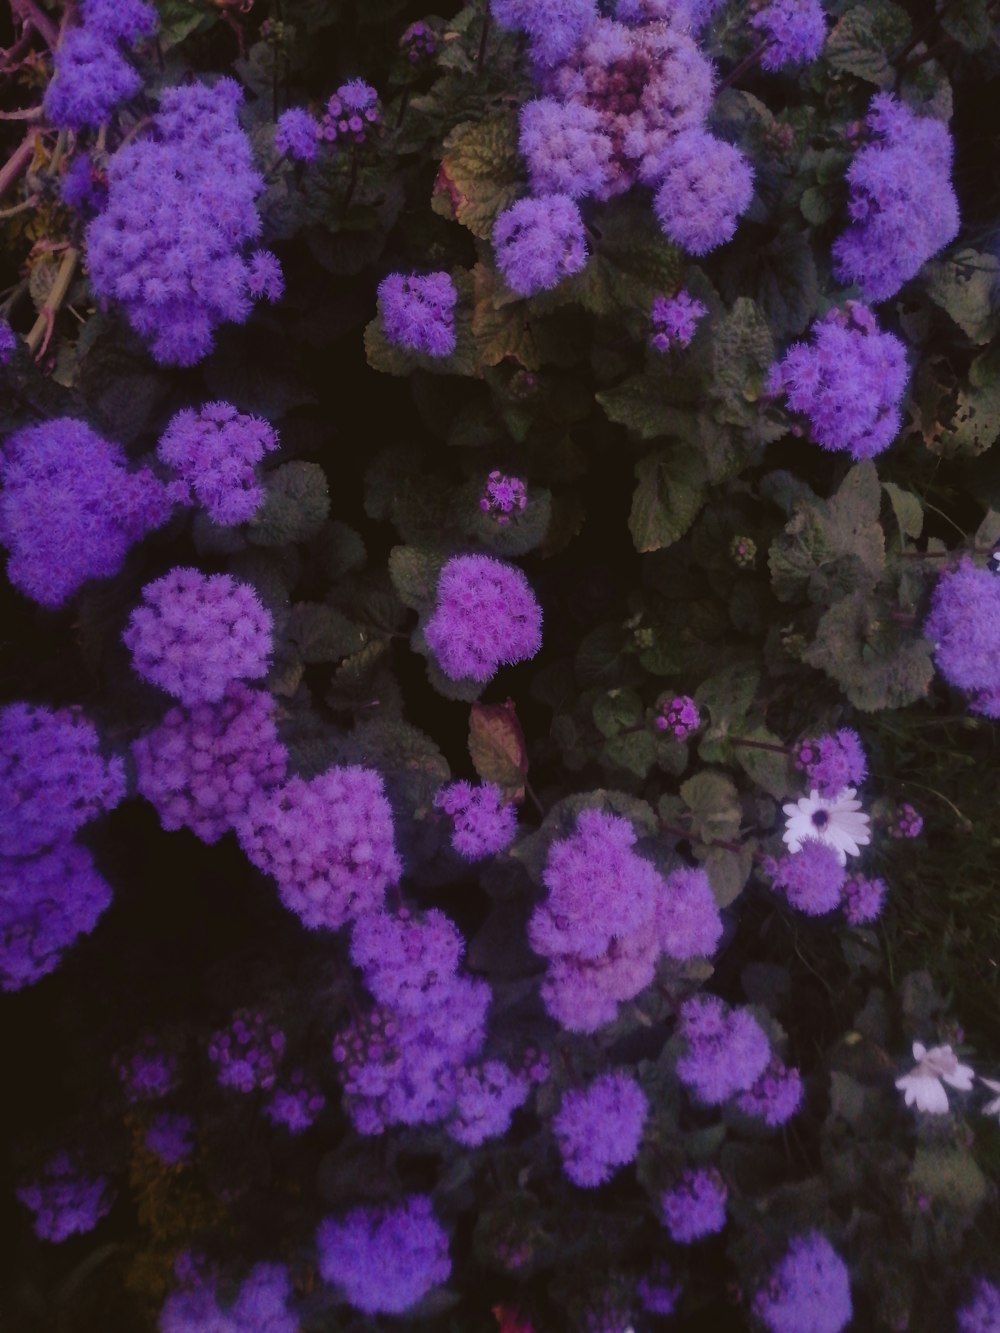 a bunch of purple flowers growing in a garden